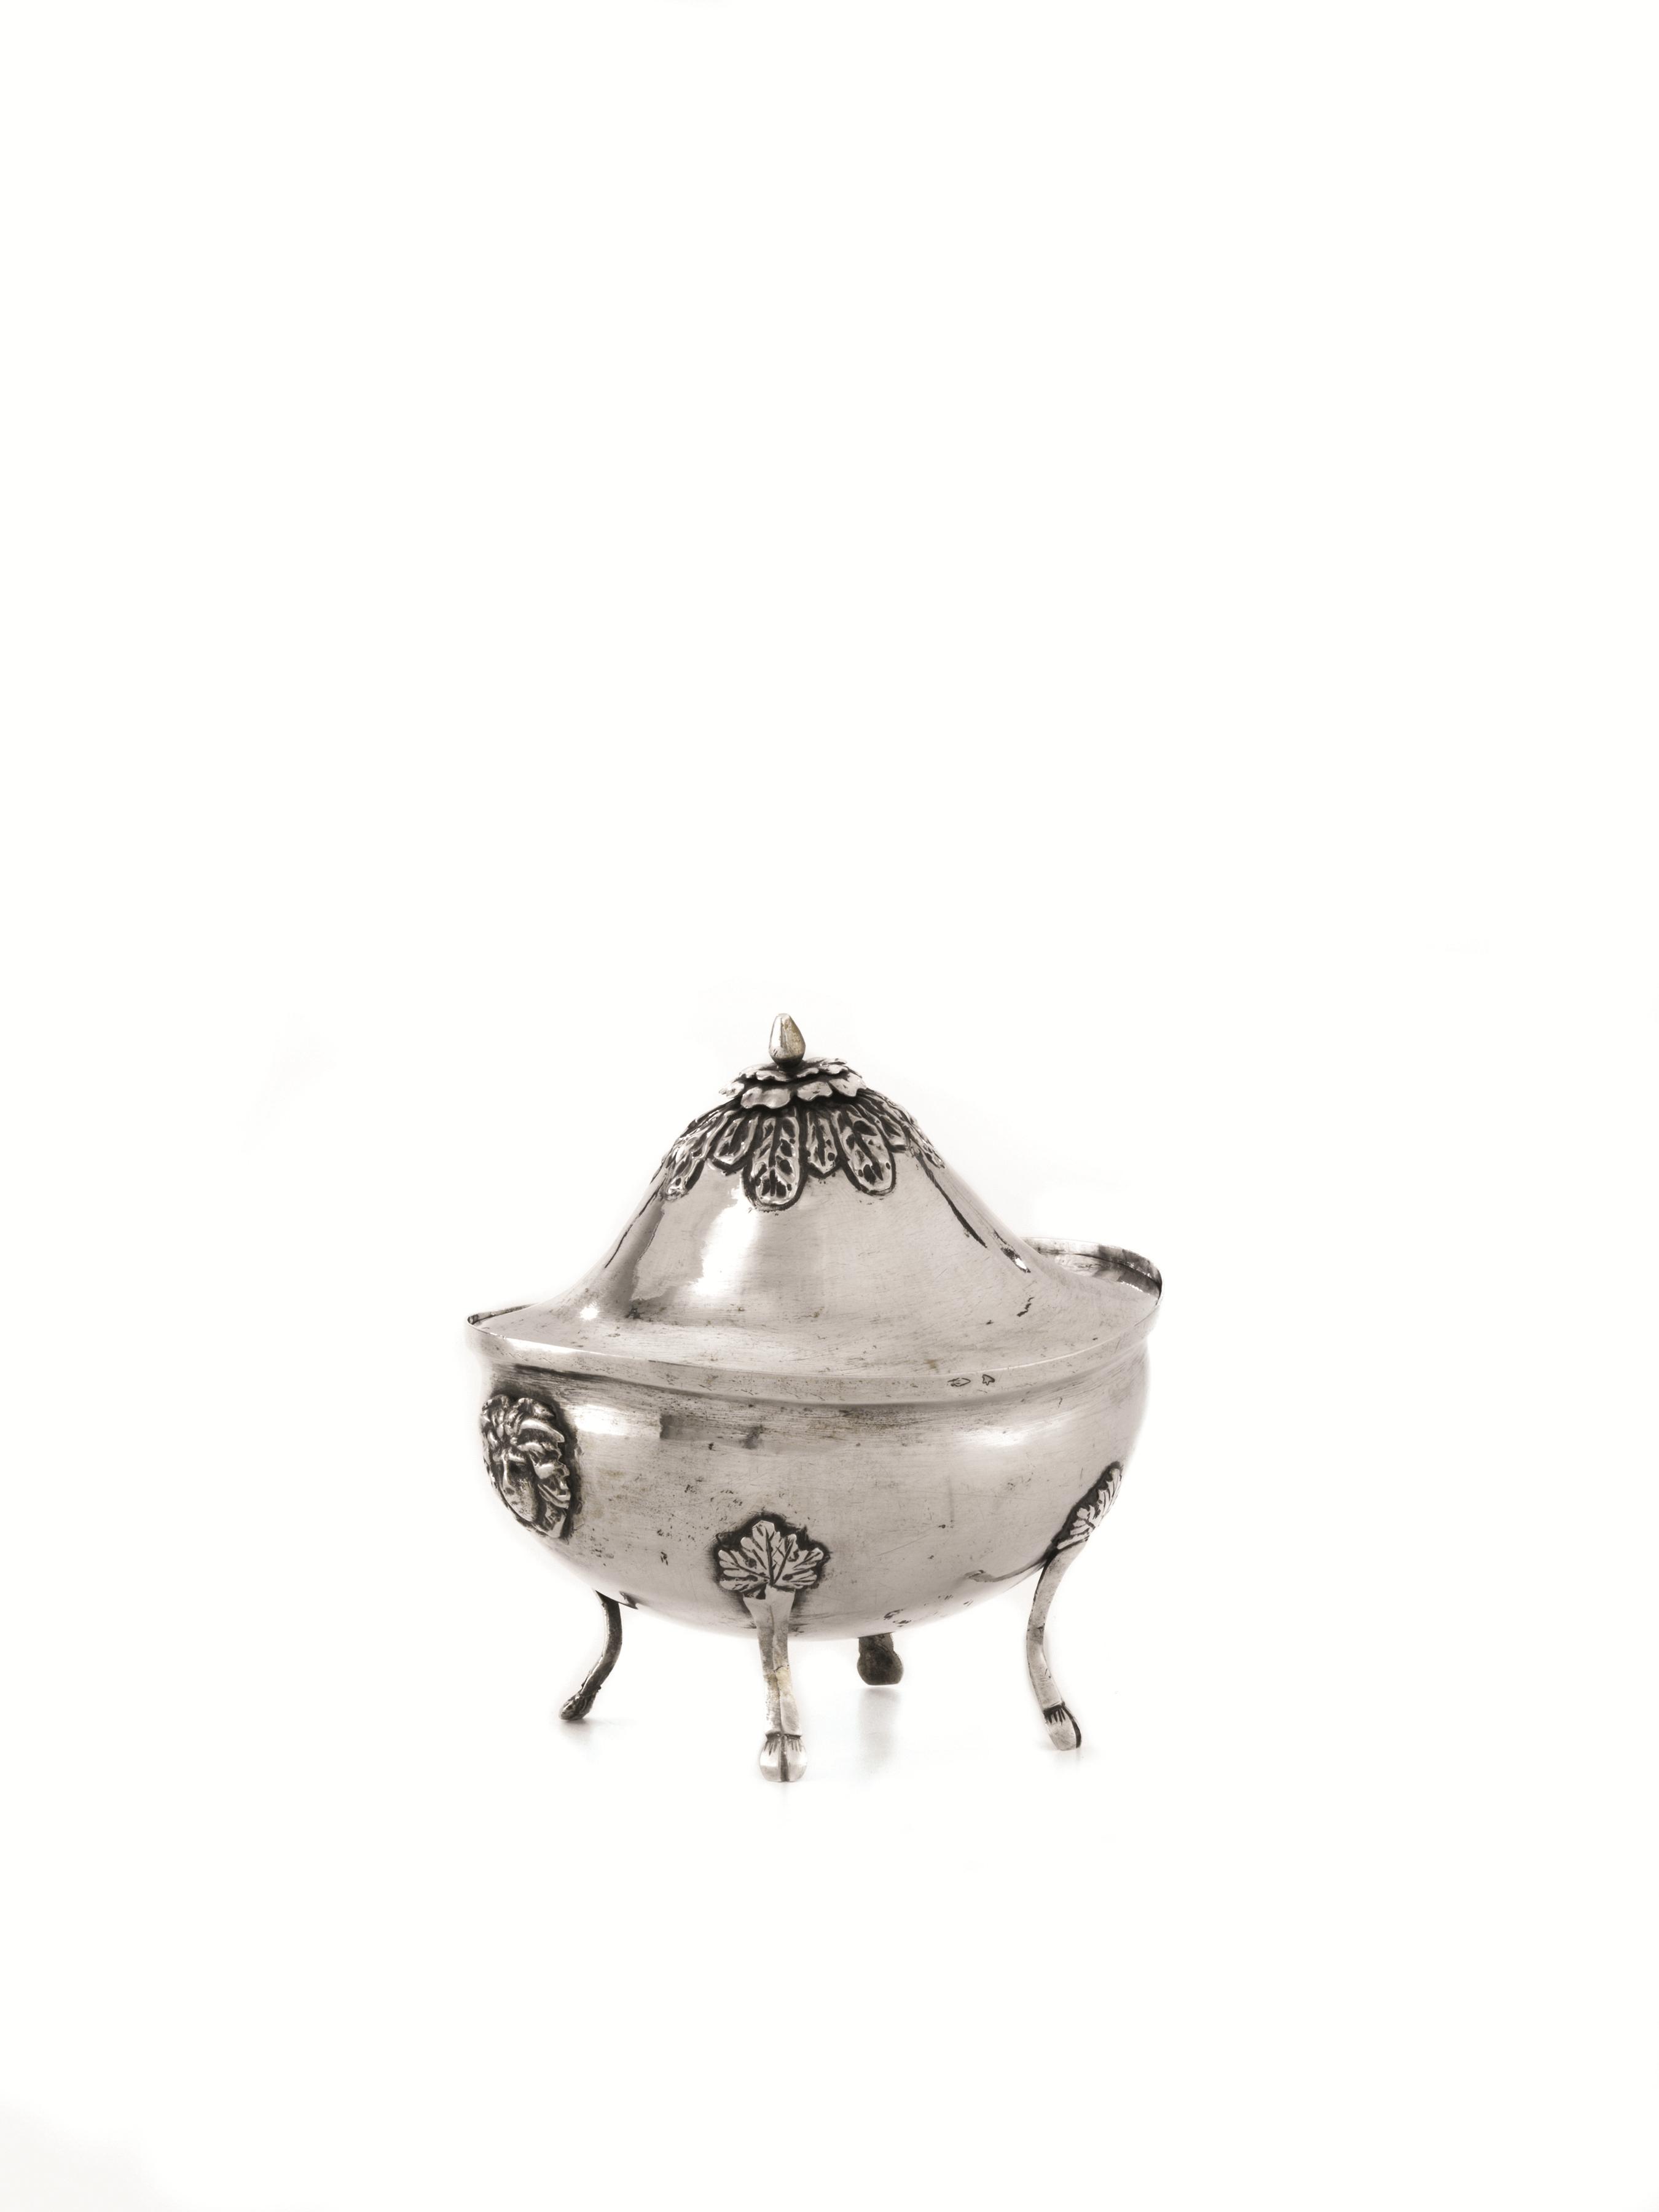 ZUCCHERIERA, BRESCIA, 1820 CIRCAin argento di forma ovoidale, quattro piedini uniti al corpo da